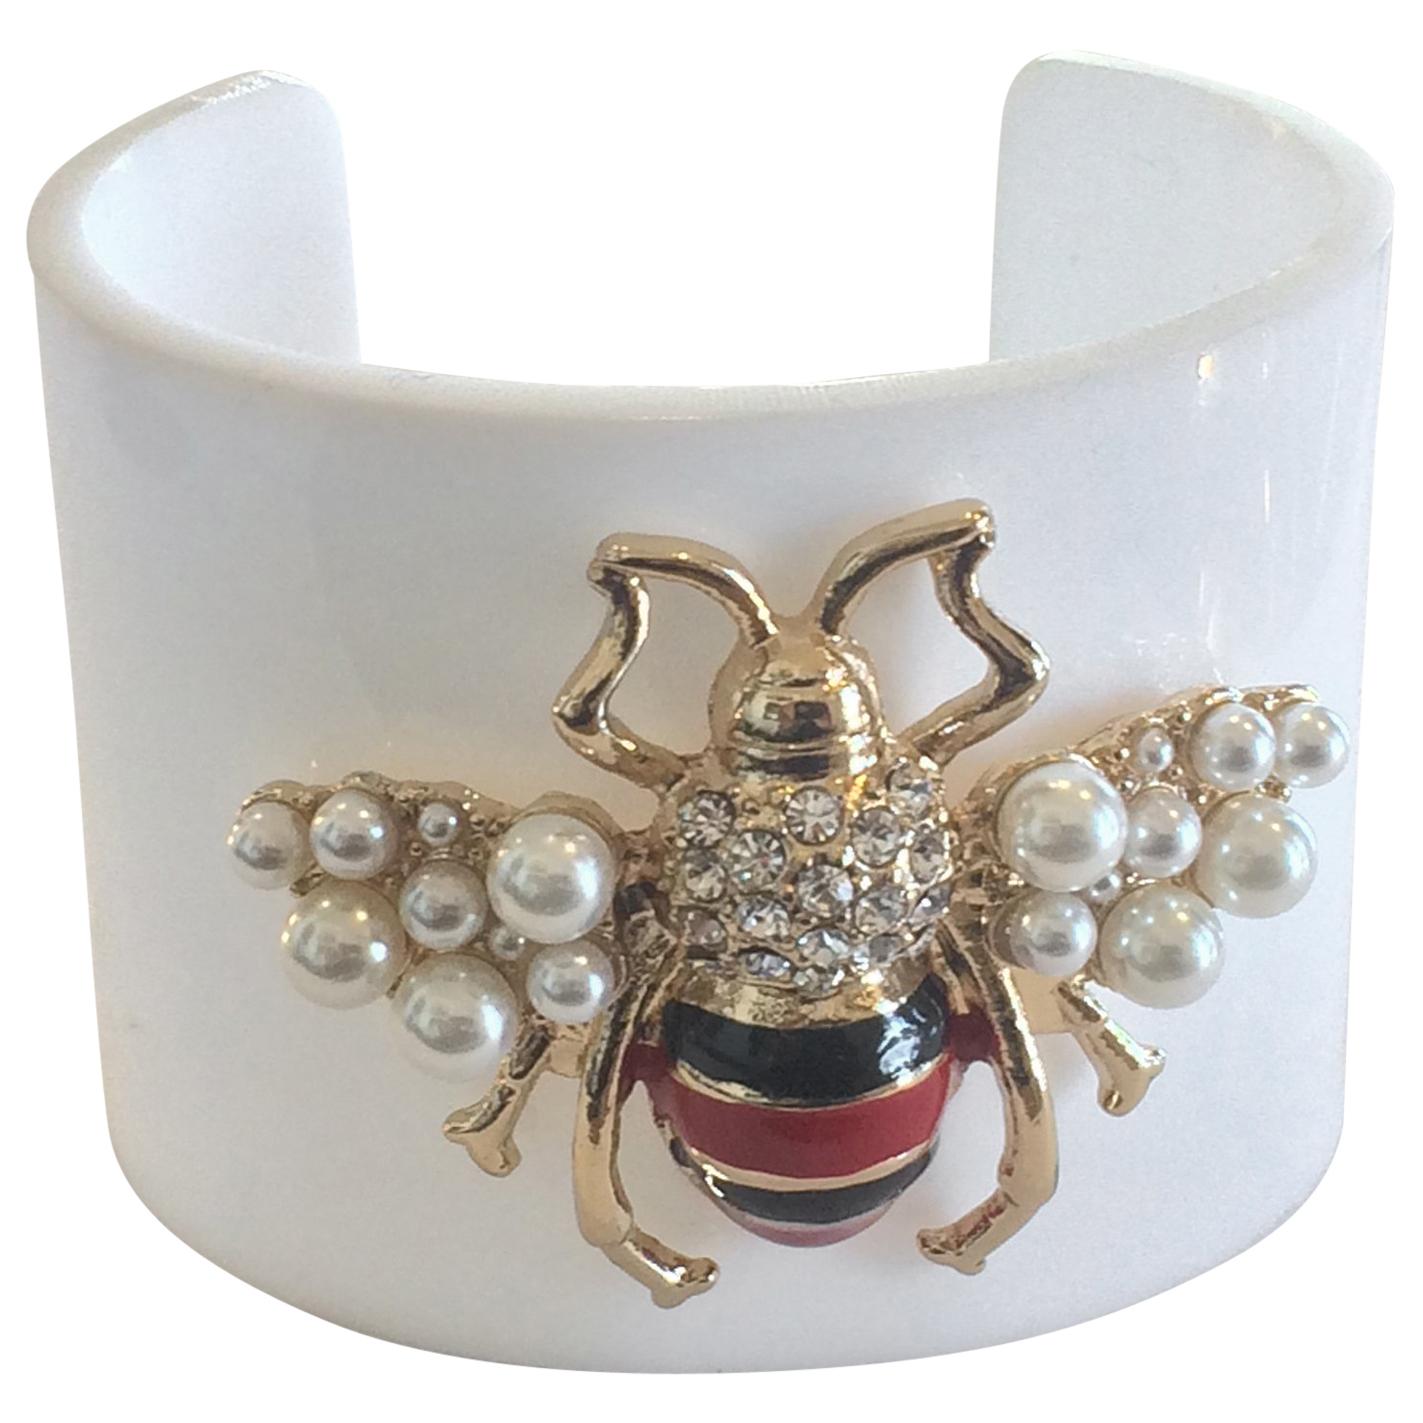 Oscar De La Renta Lucite cuff bracelet with Bumble Bee